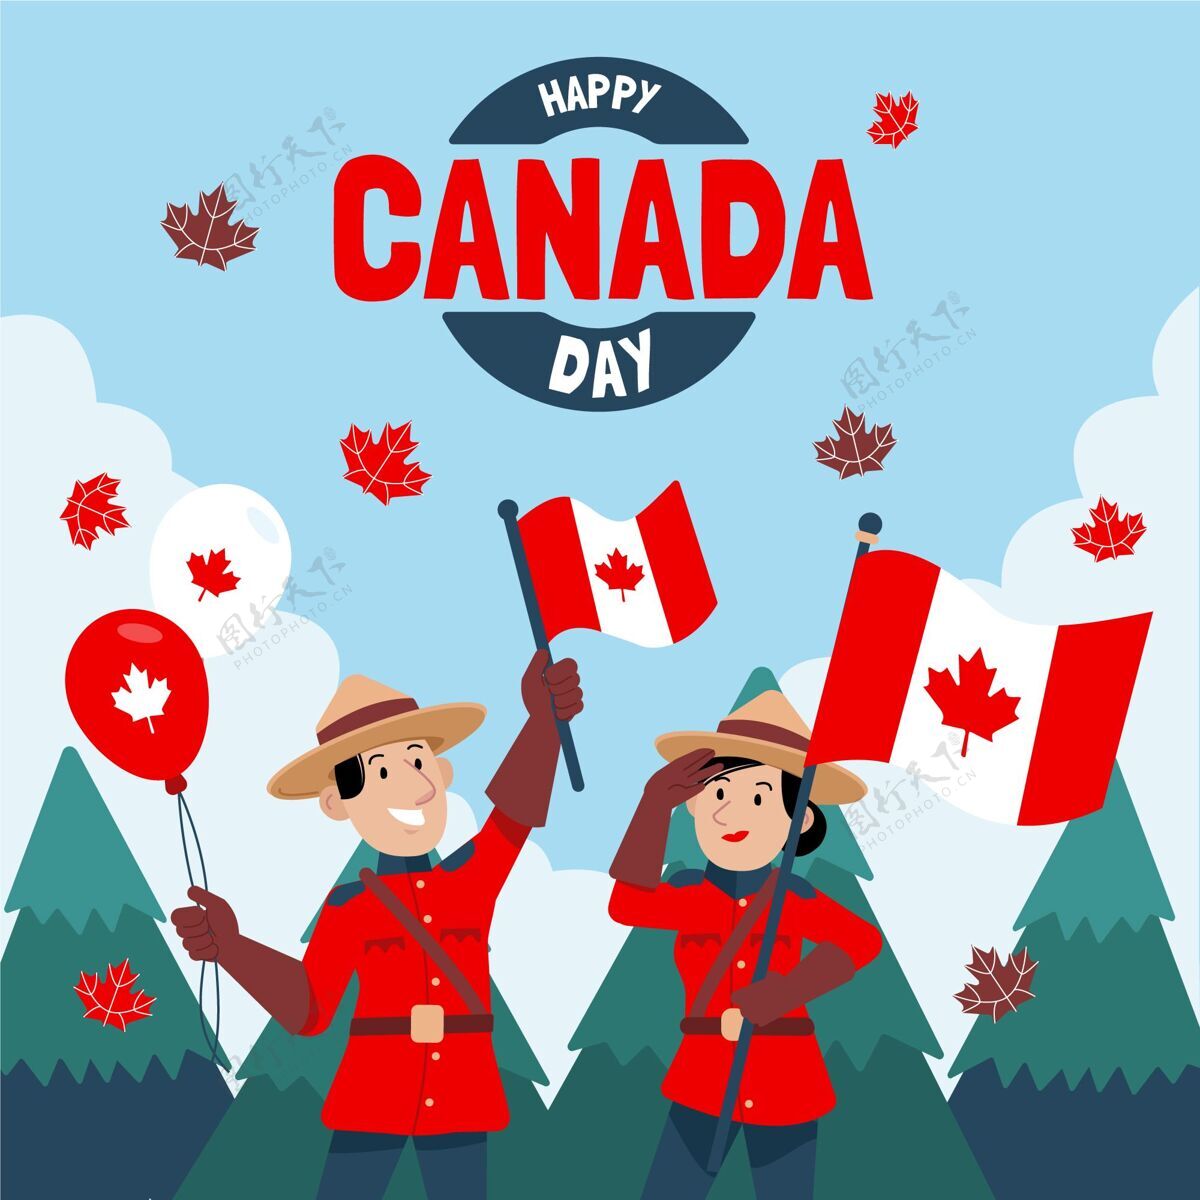 加拿大手绘加拿大日插图公园管理员庆祝快乐加拿大日